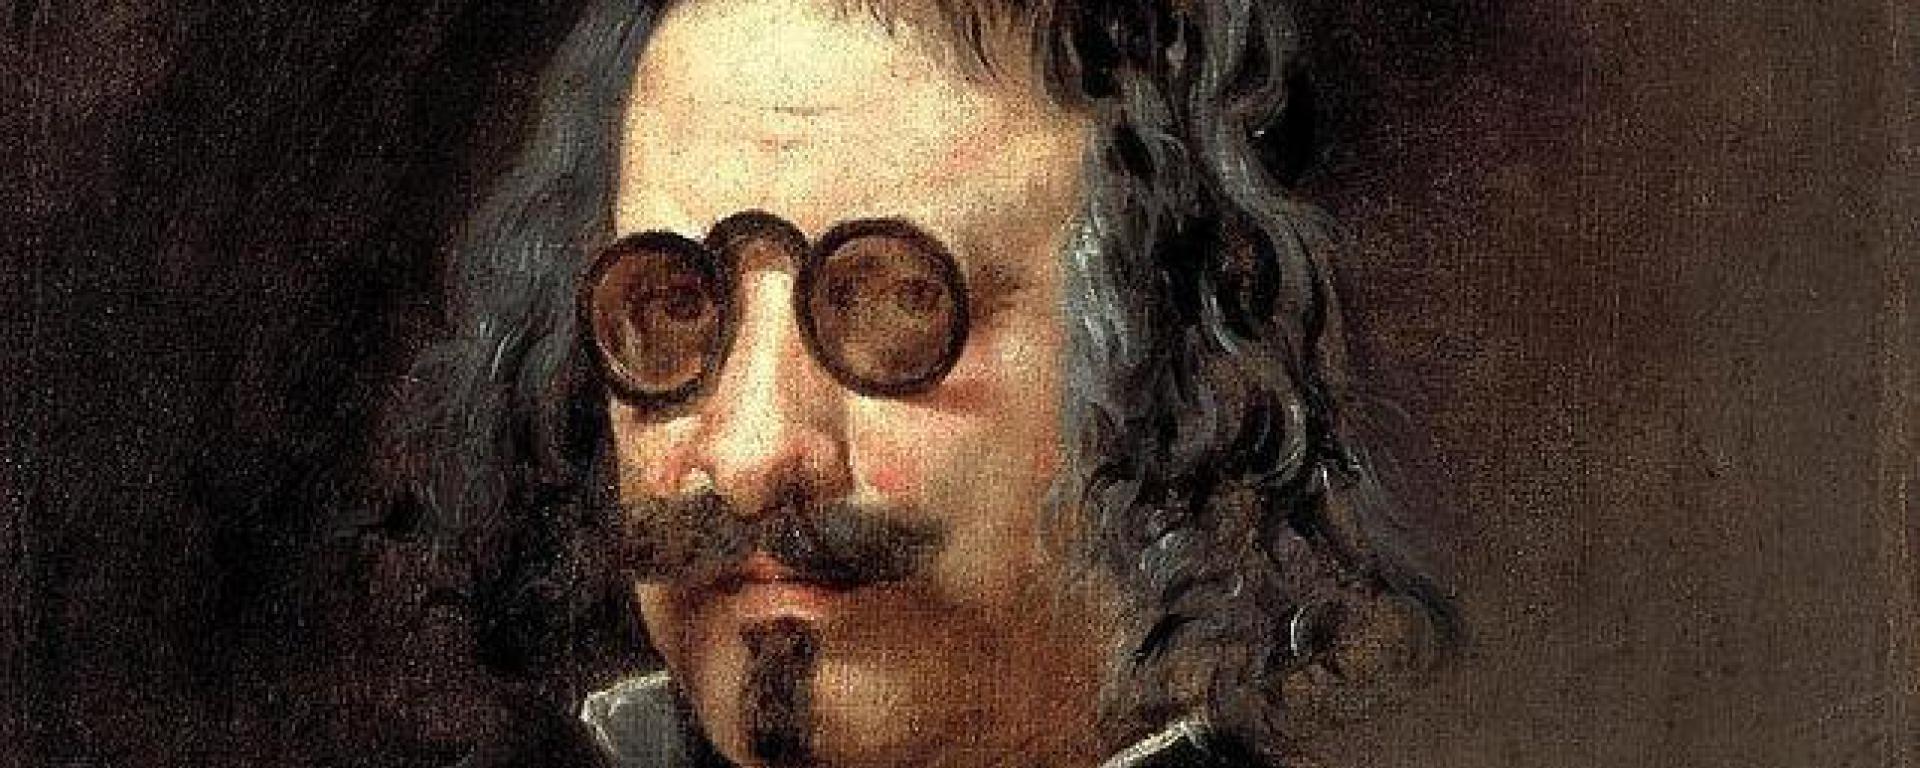 Francisco de Quevedo (1580-1645), dictaminó aquello de que “los que de corazón se quieren sólo con el corazón se hablan”. Foto/i1.wp.com